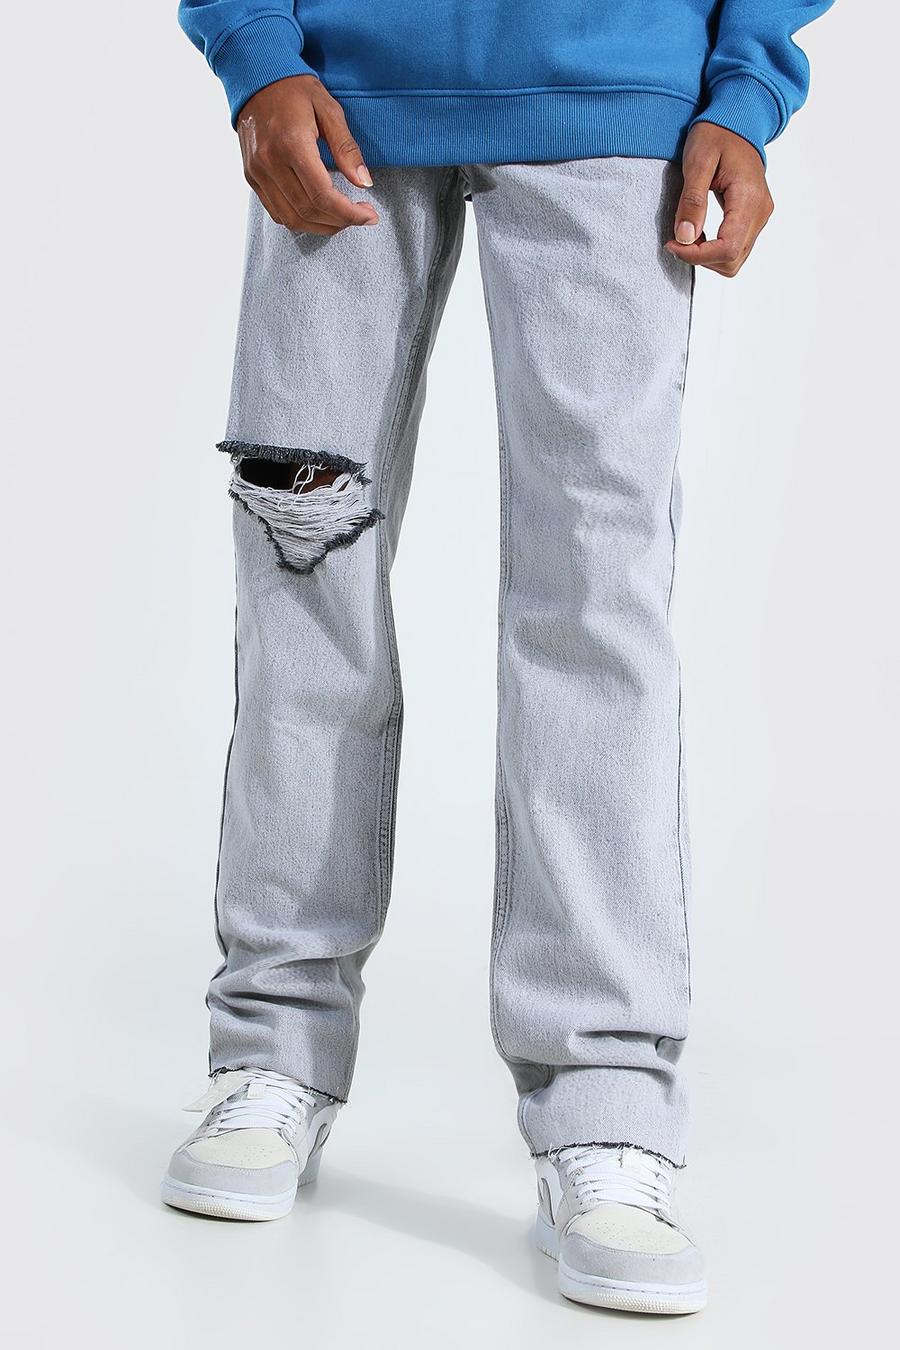 אפור קפוא ג'ינס בגזרה ישרה עם קרעים גדולים בברכיים לגברים גבוהים image number 1